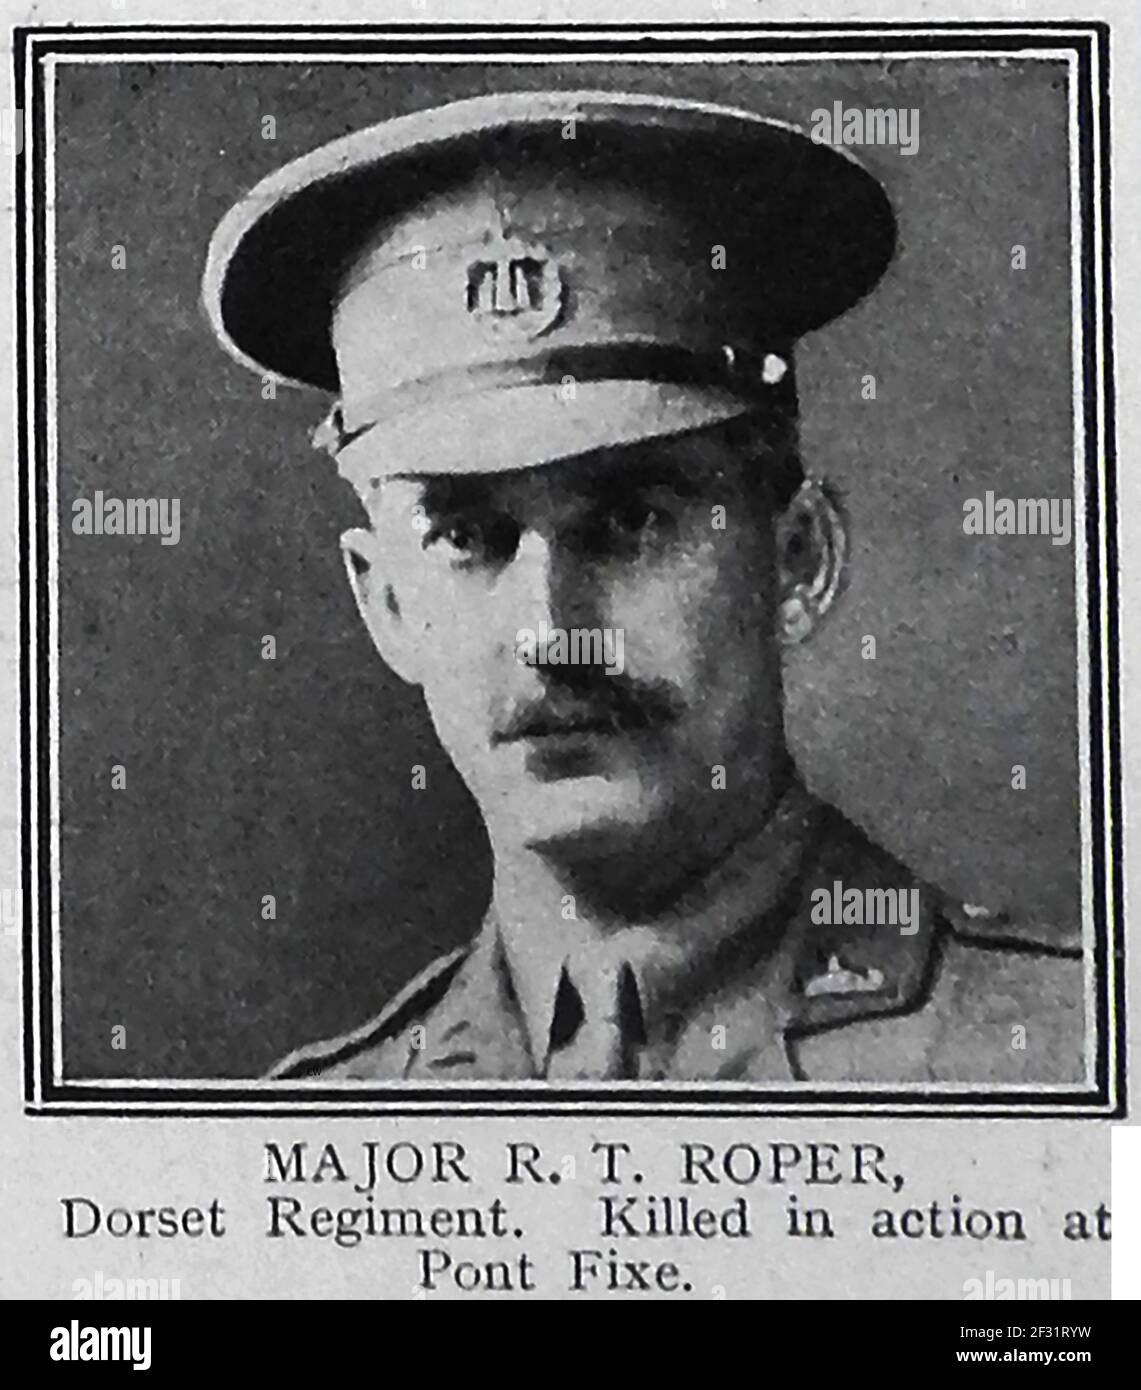 MAJOR R T ROPER des Dorset Regiment, der in Aktion an Pont Fixe getötet wurde - EIN gedrucktes Porträt von einer Ehrenseite von 1914-1915 von denen, die in Aktion im Ersten Weltkrieg getötet wurden. Stockfoto